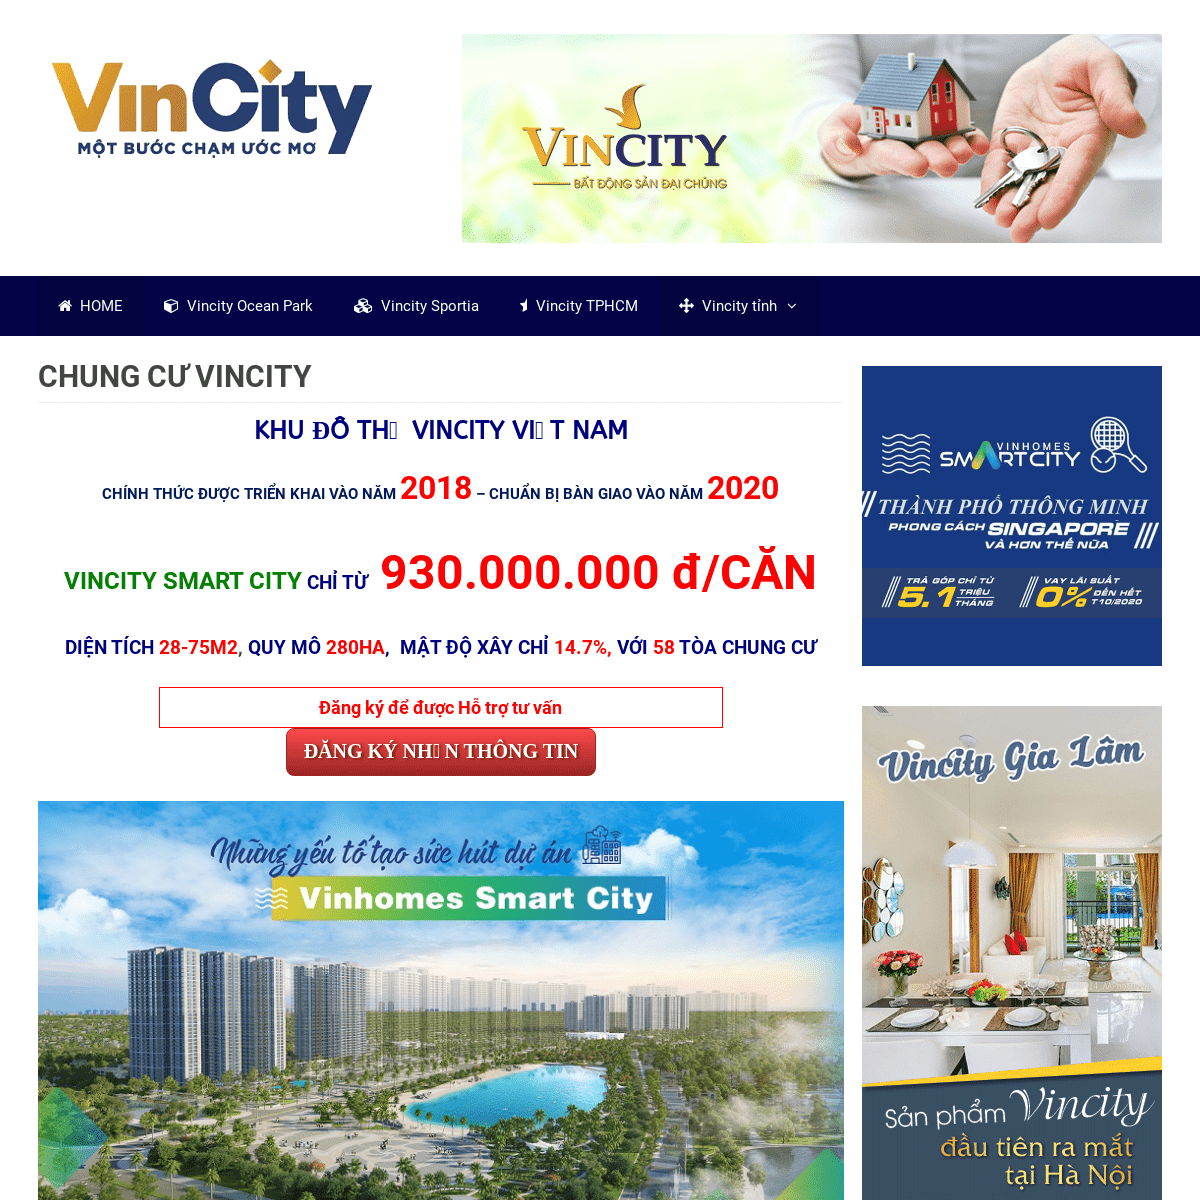 A complete backup of vincity.info.vn